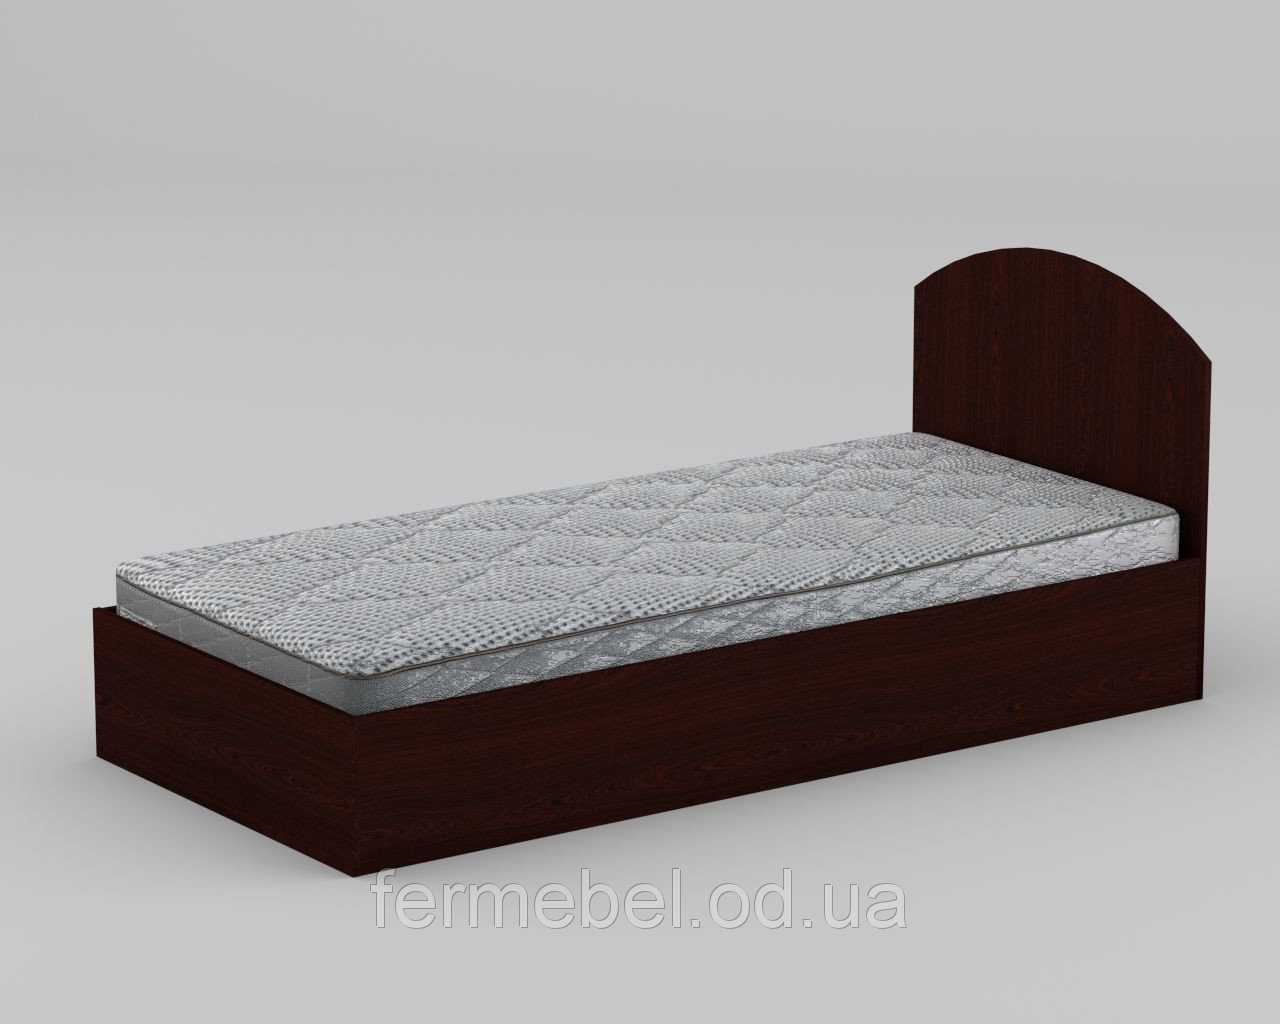 Односпальная кровать из древесно-стружечной плиты